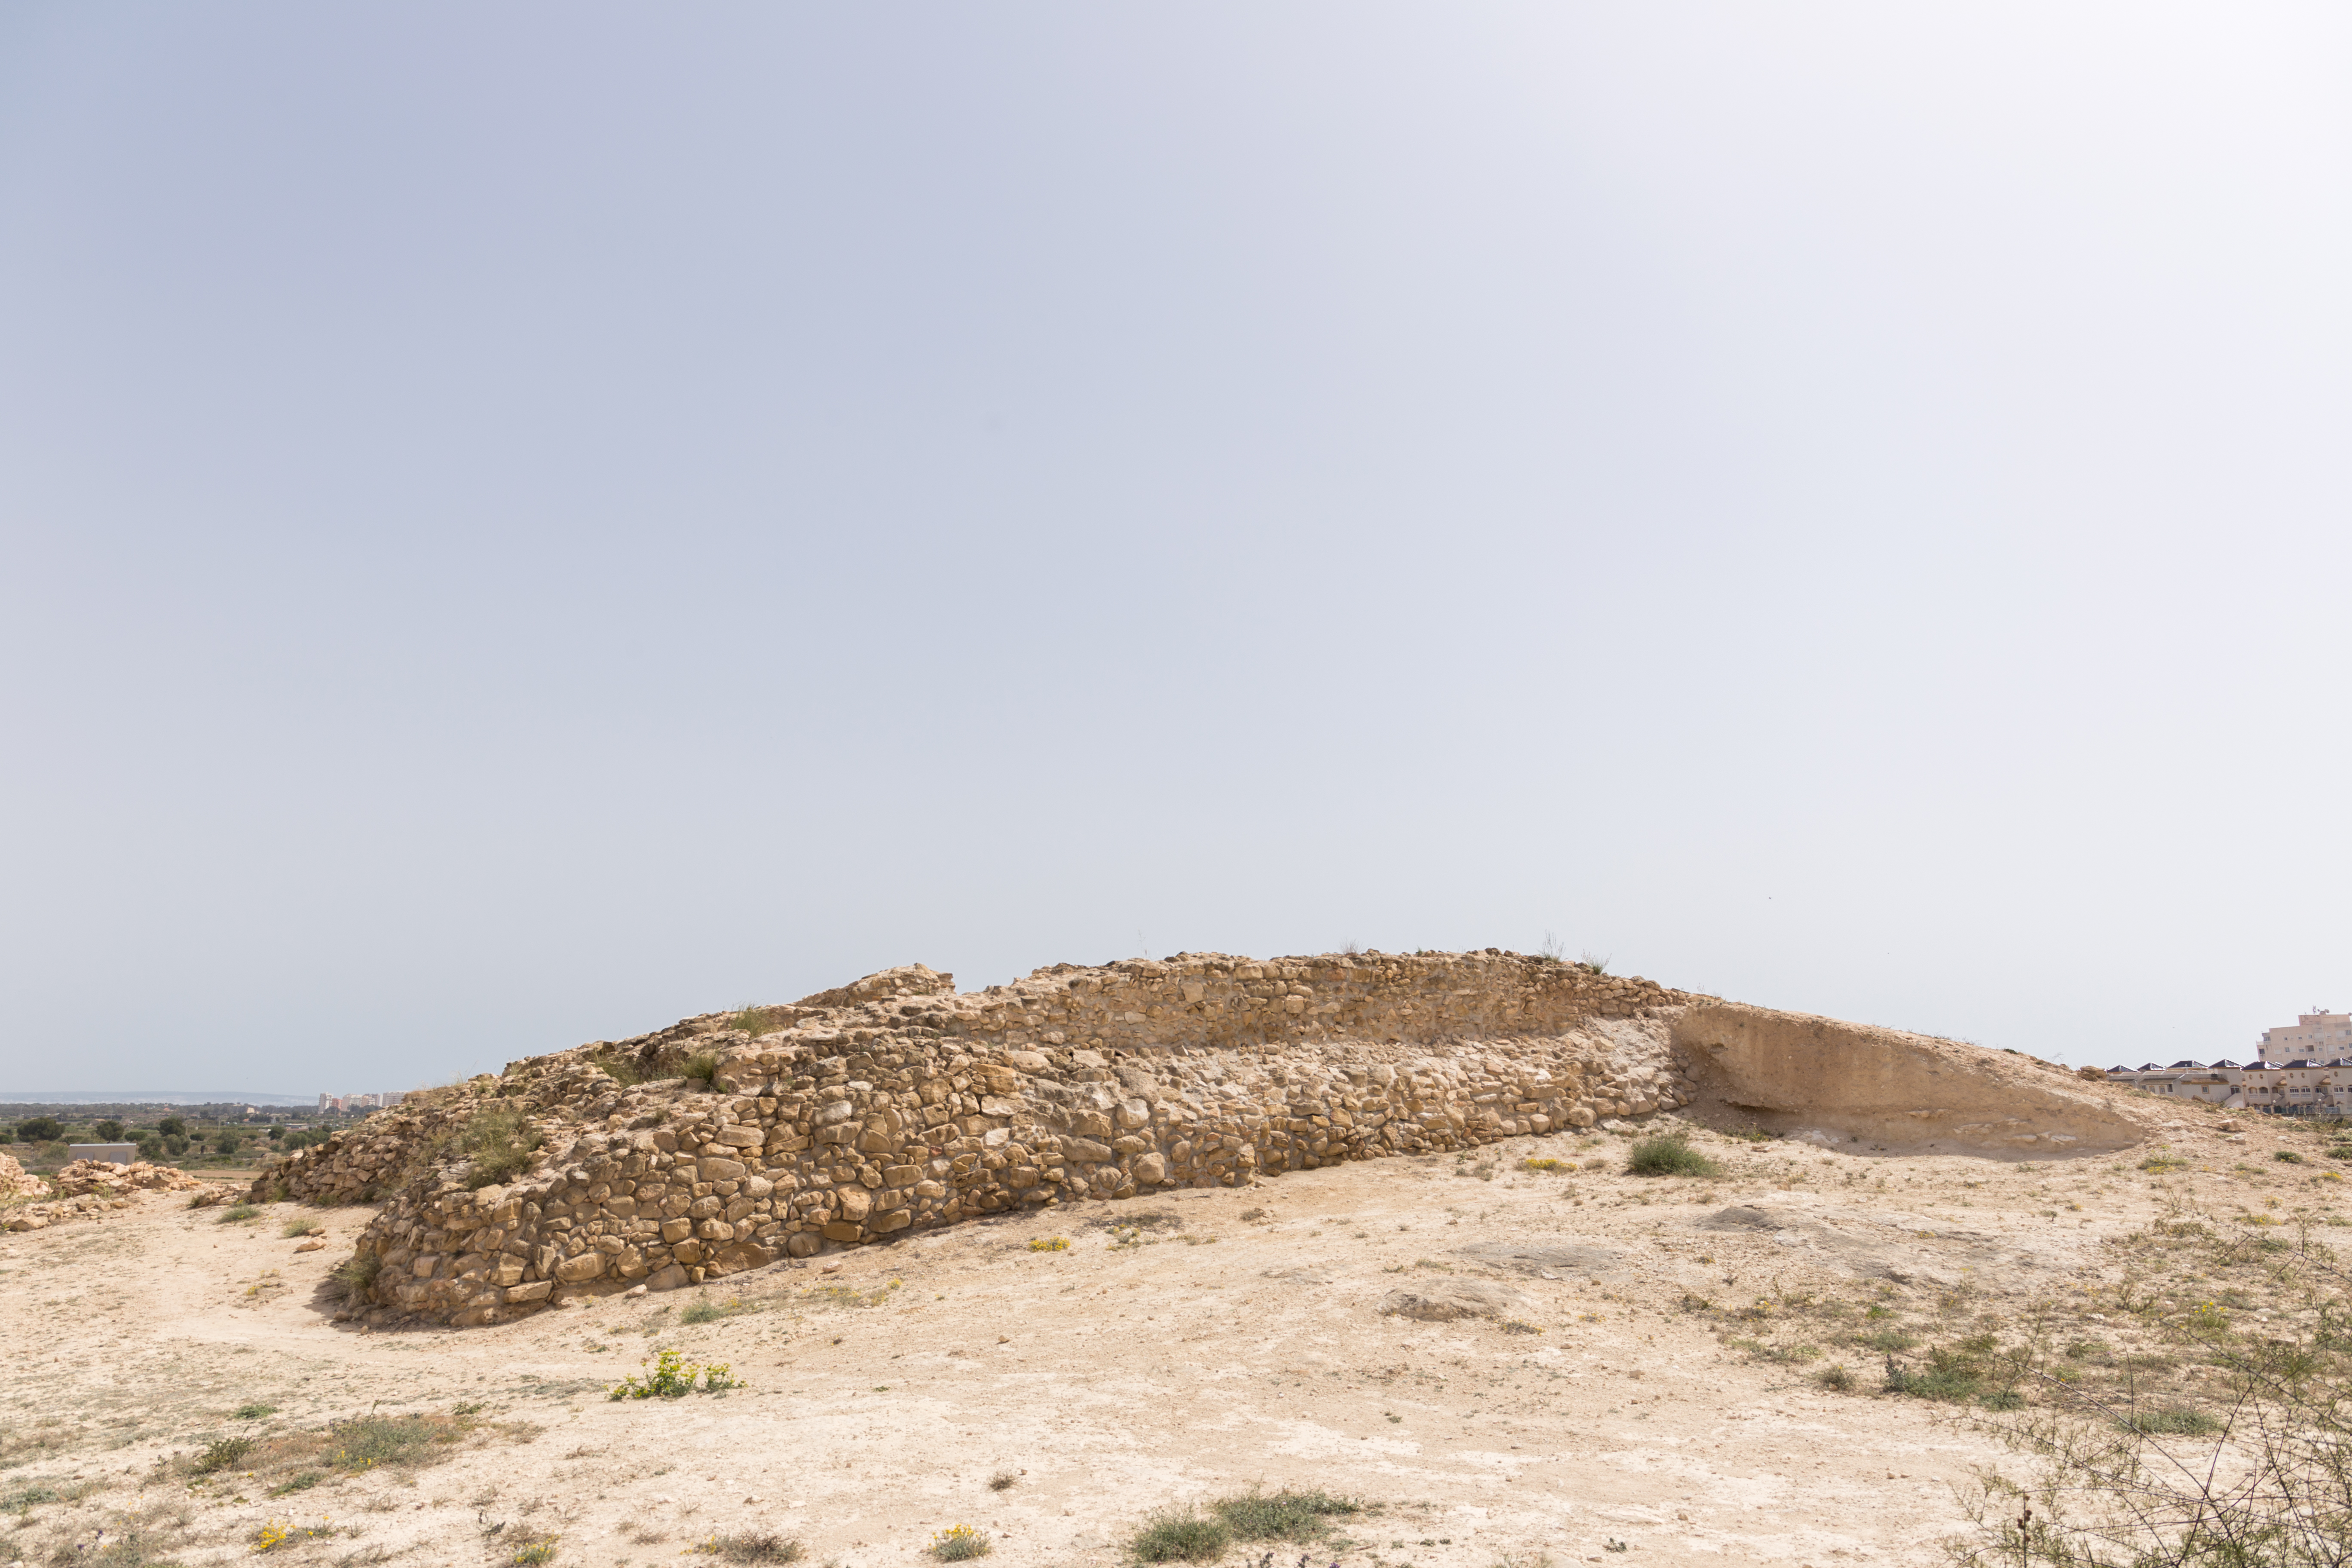 The little phoenician fort known as the “Cabeçó de L’estany”